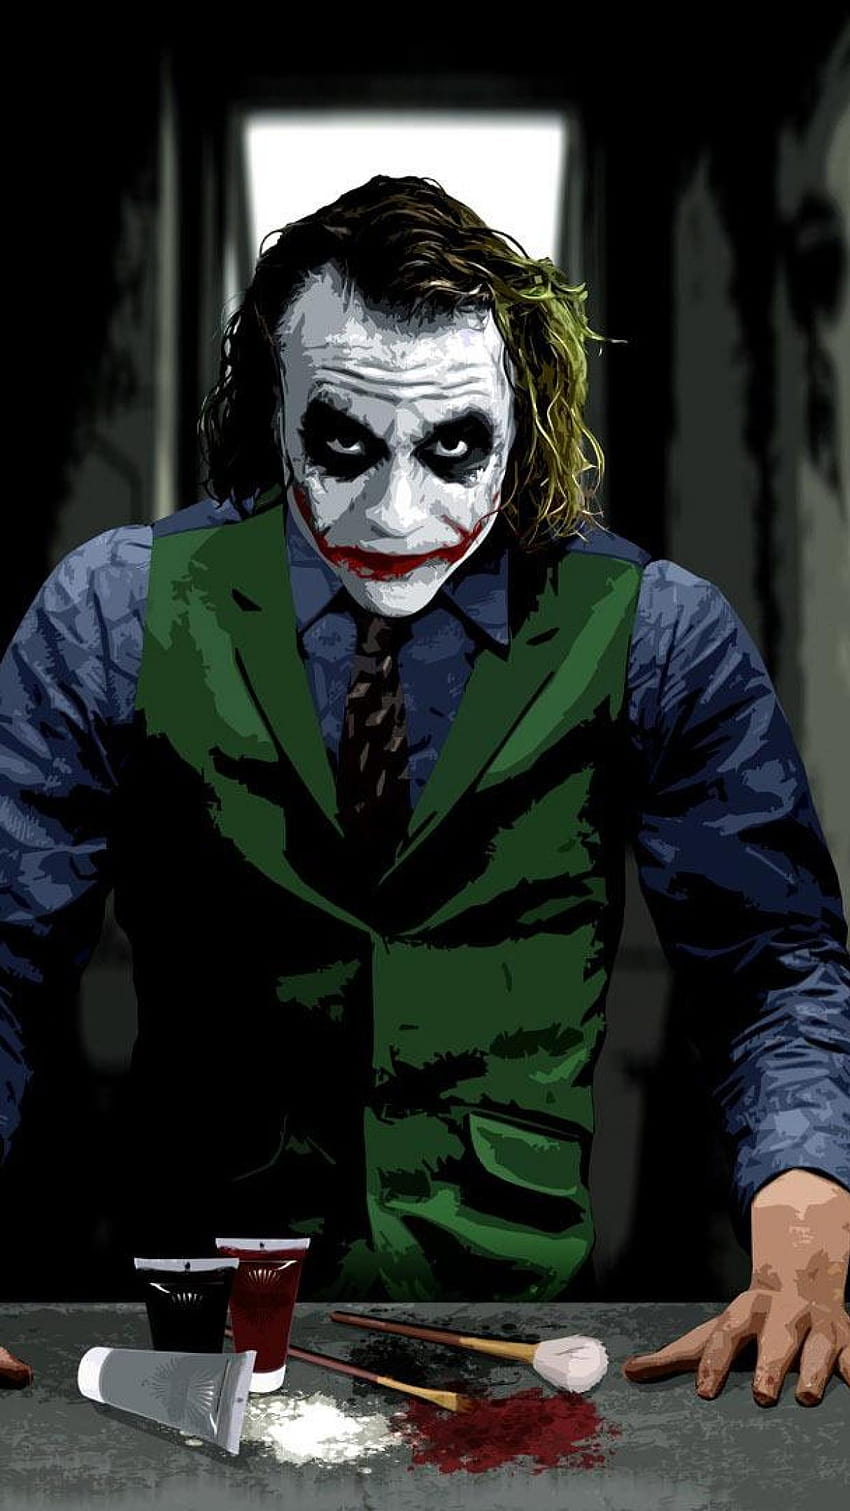 Batman Joker For Mobile, on, mobile full joker HD phone wallpaper | Pxfuel